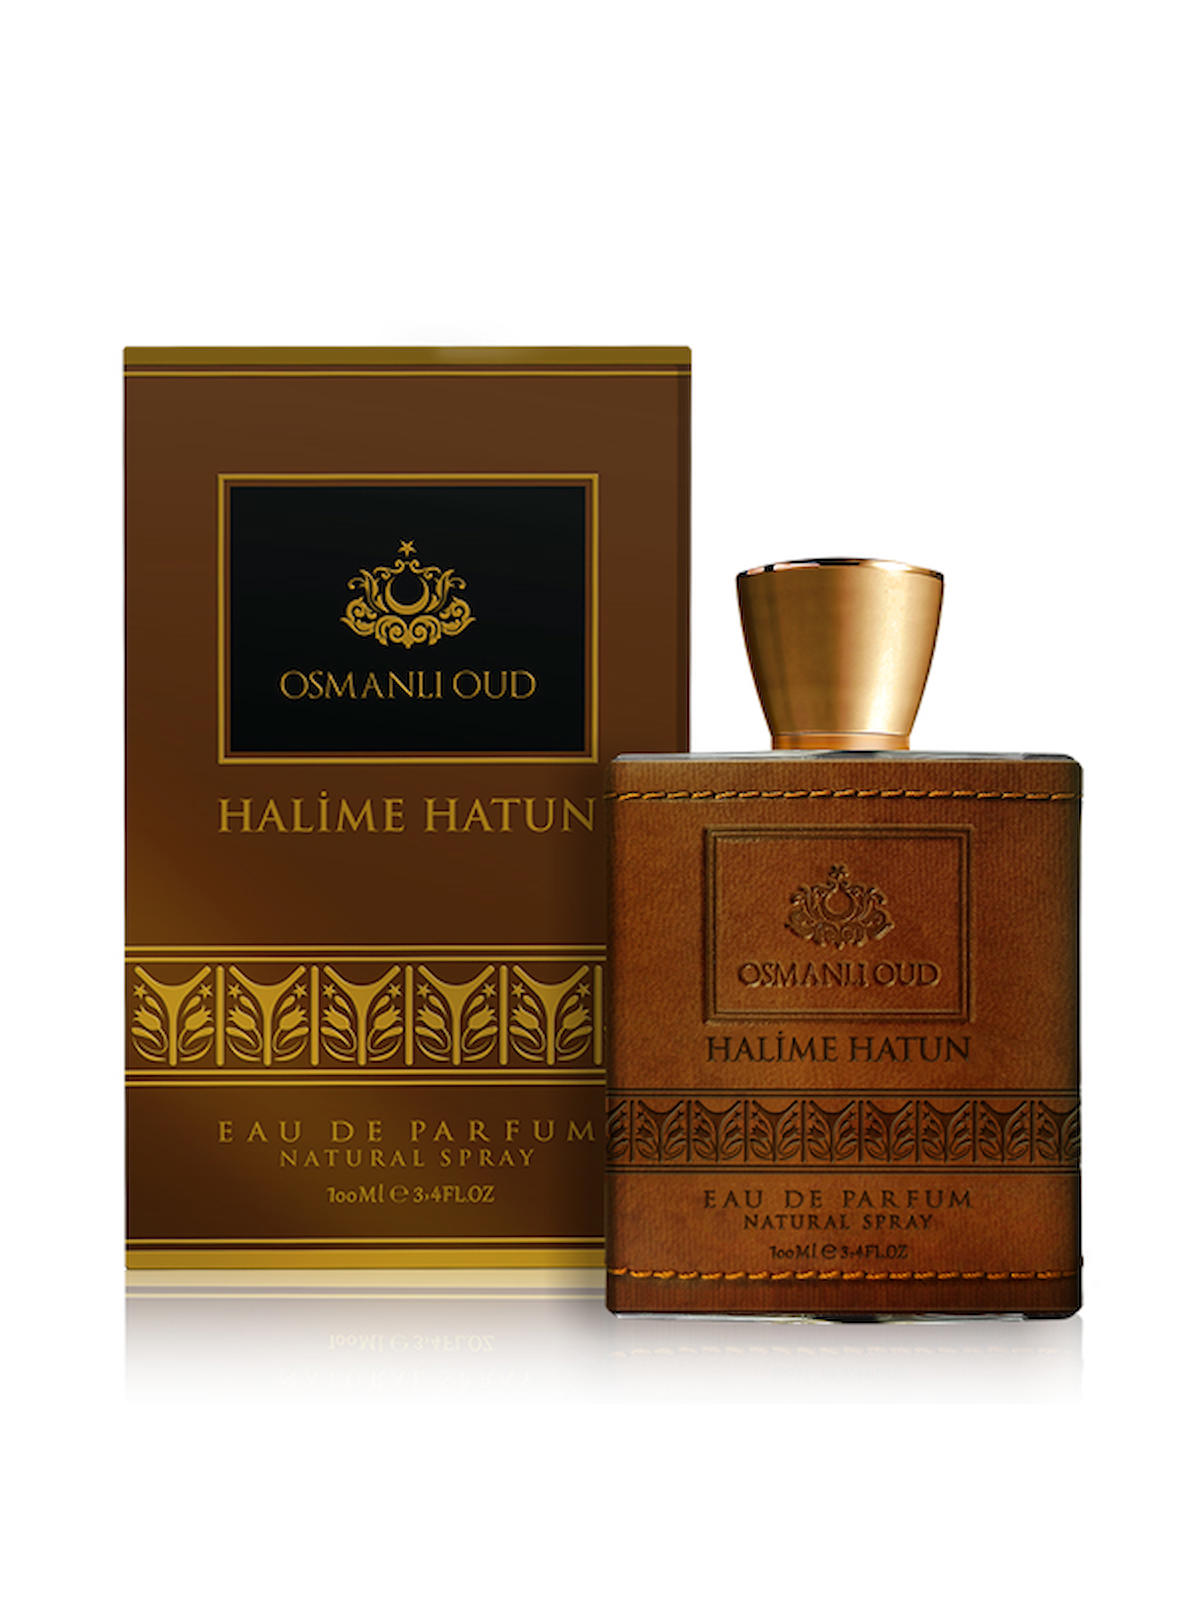 Osmanli Oud Legend Halime Hatun EDP Pembe Biber Kadın Parfüm 100 ml